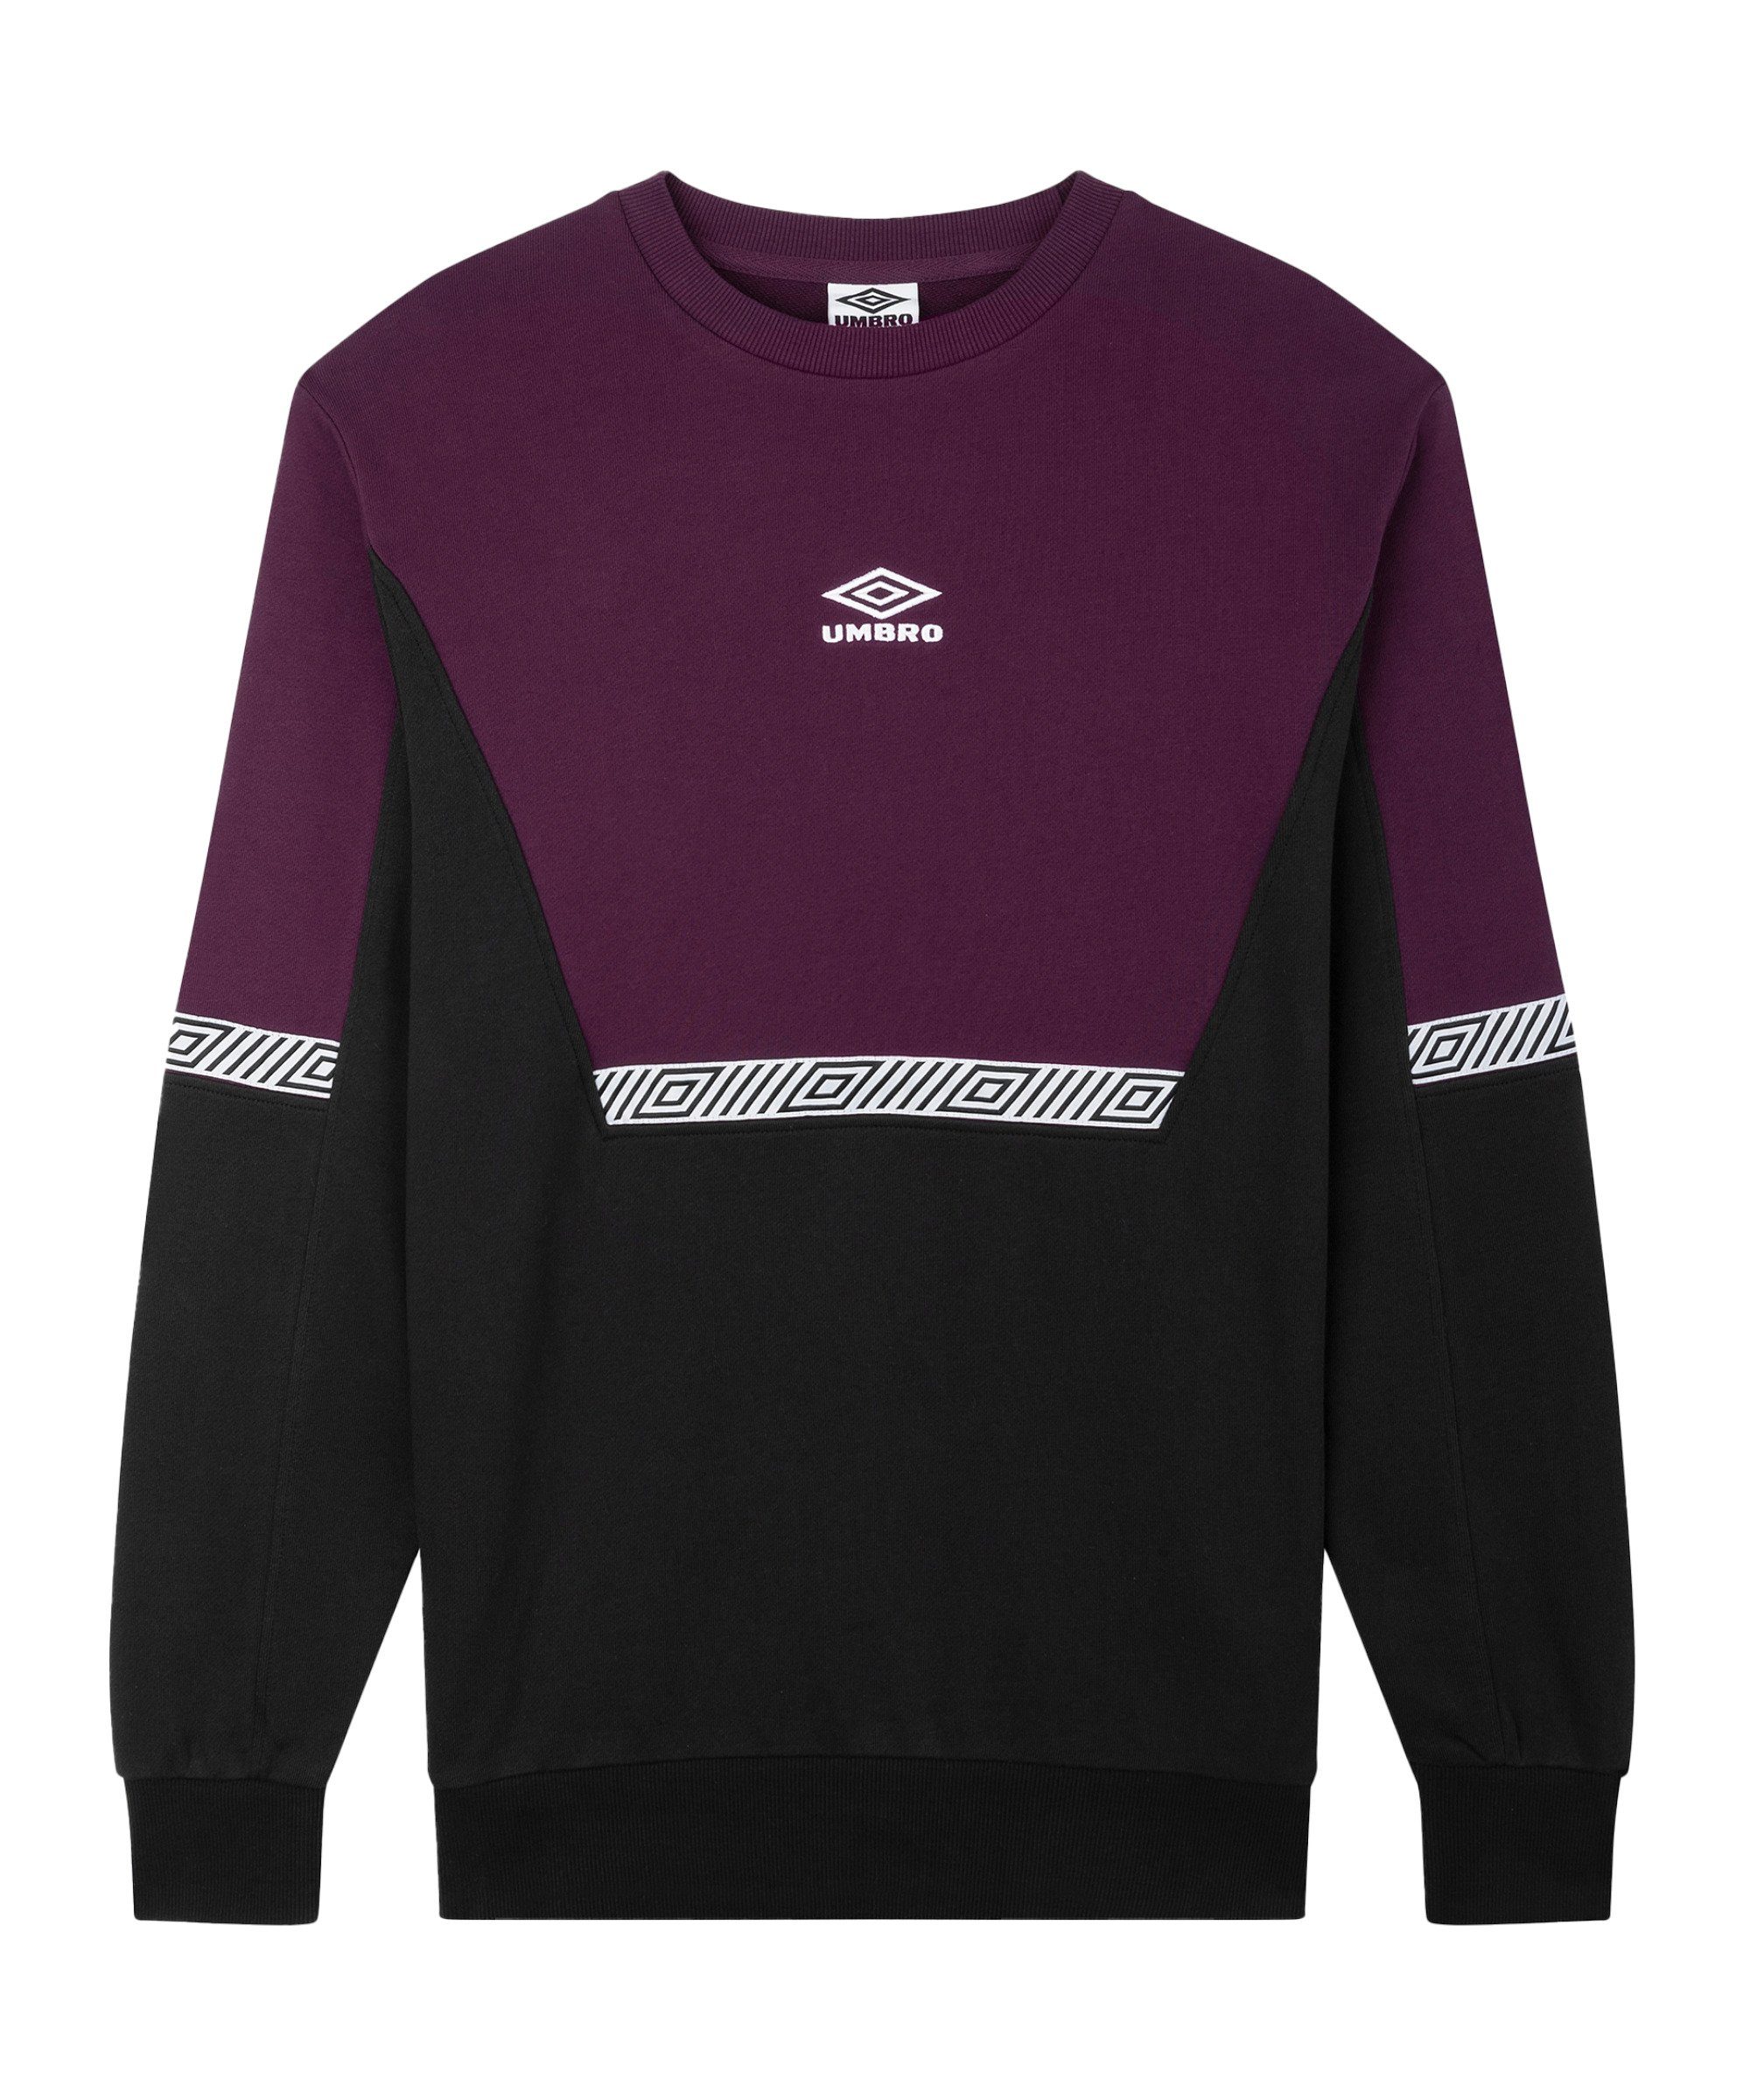 Umbro Sweatshirt Sports Style Club Sweatshirt schwarzlila